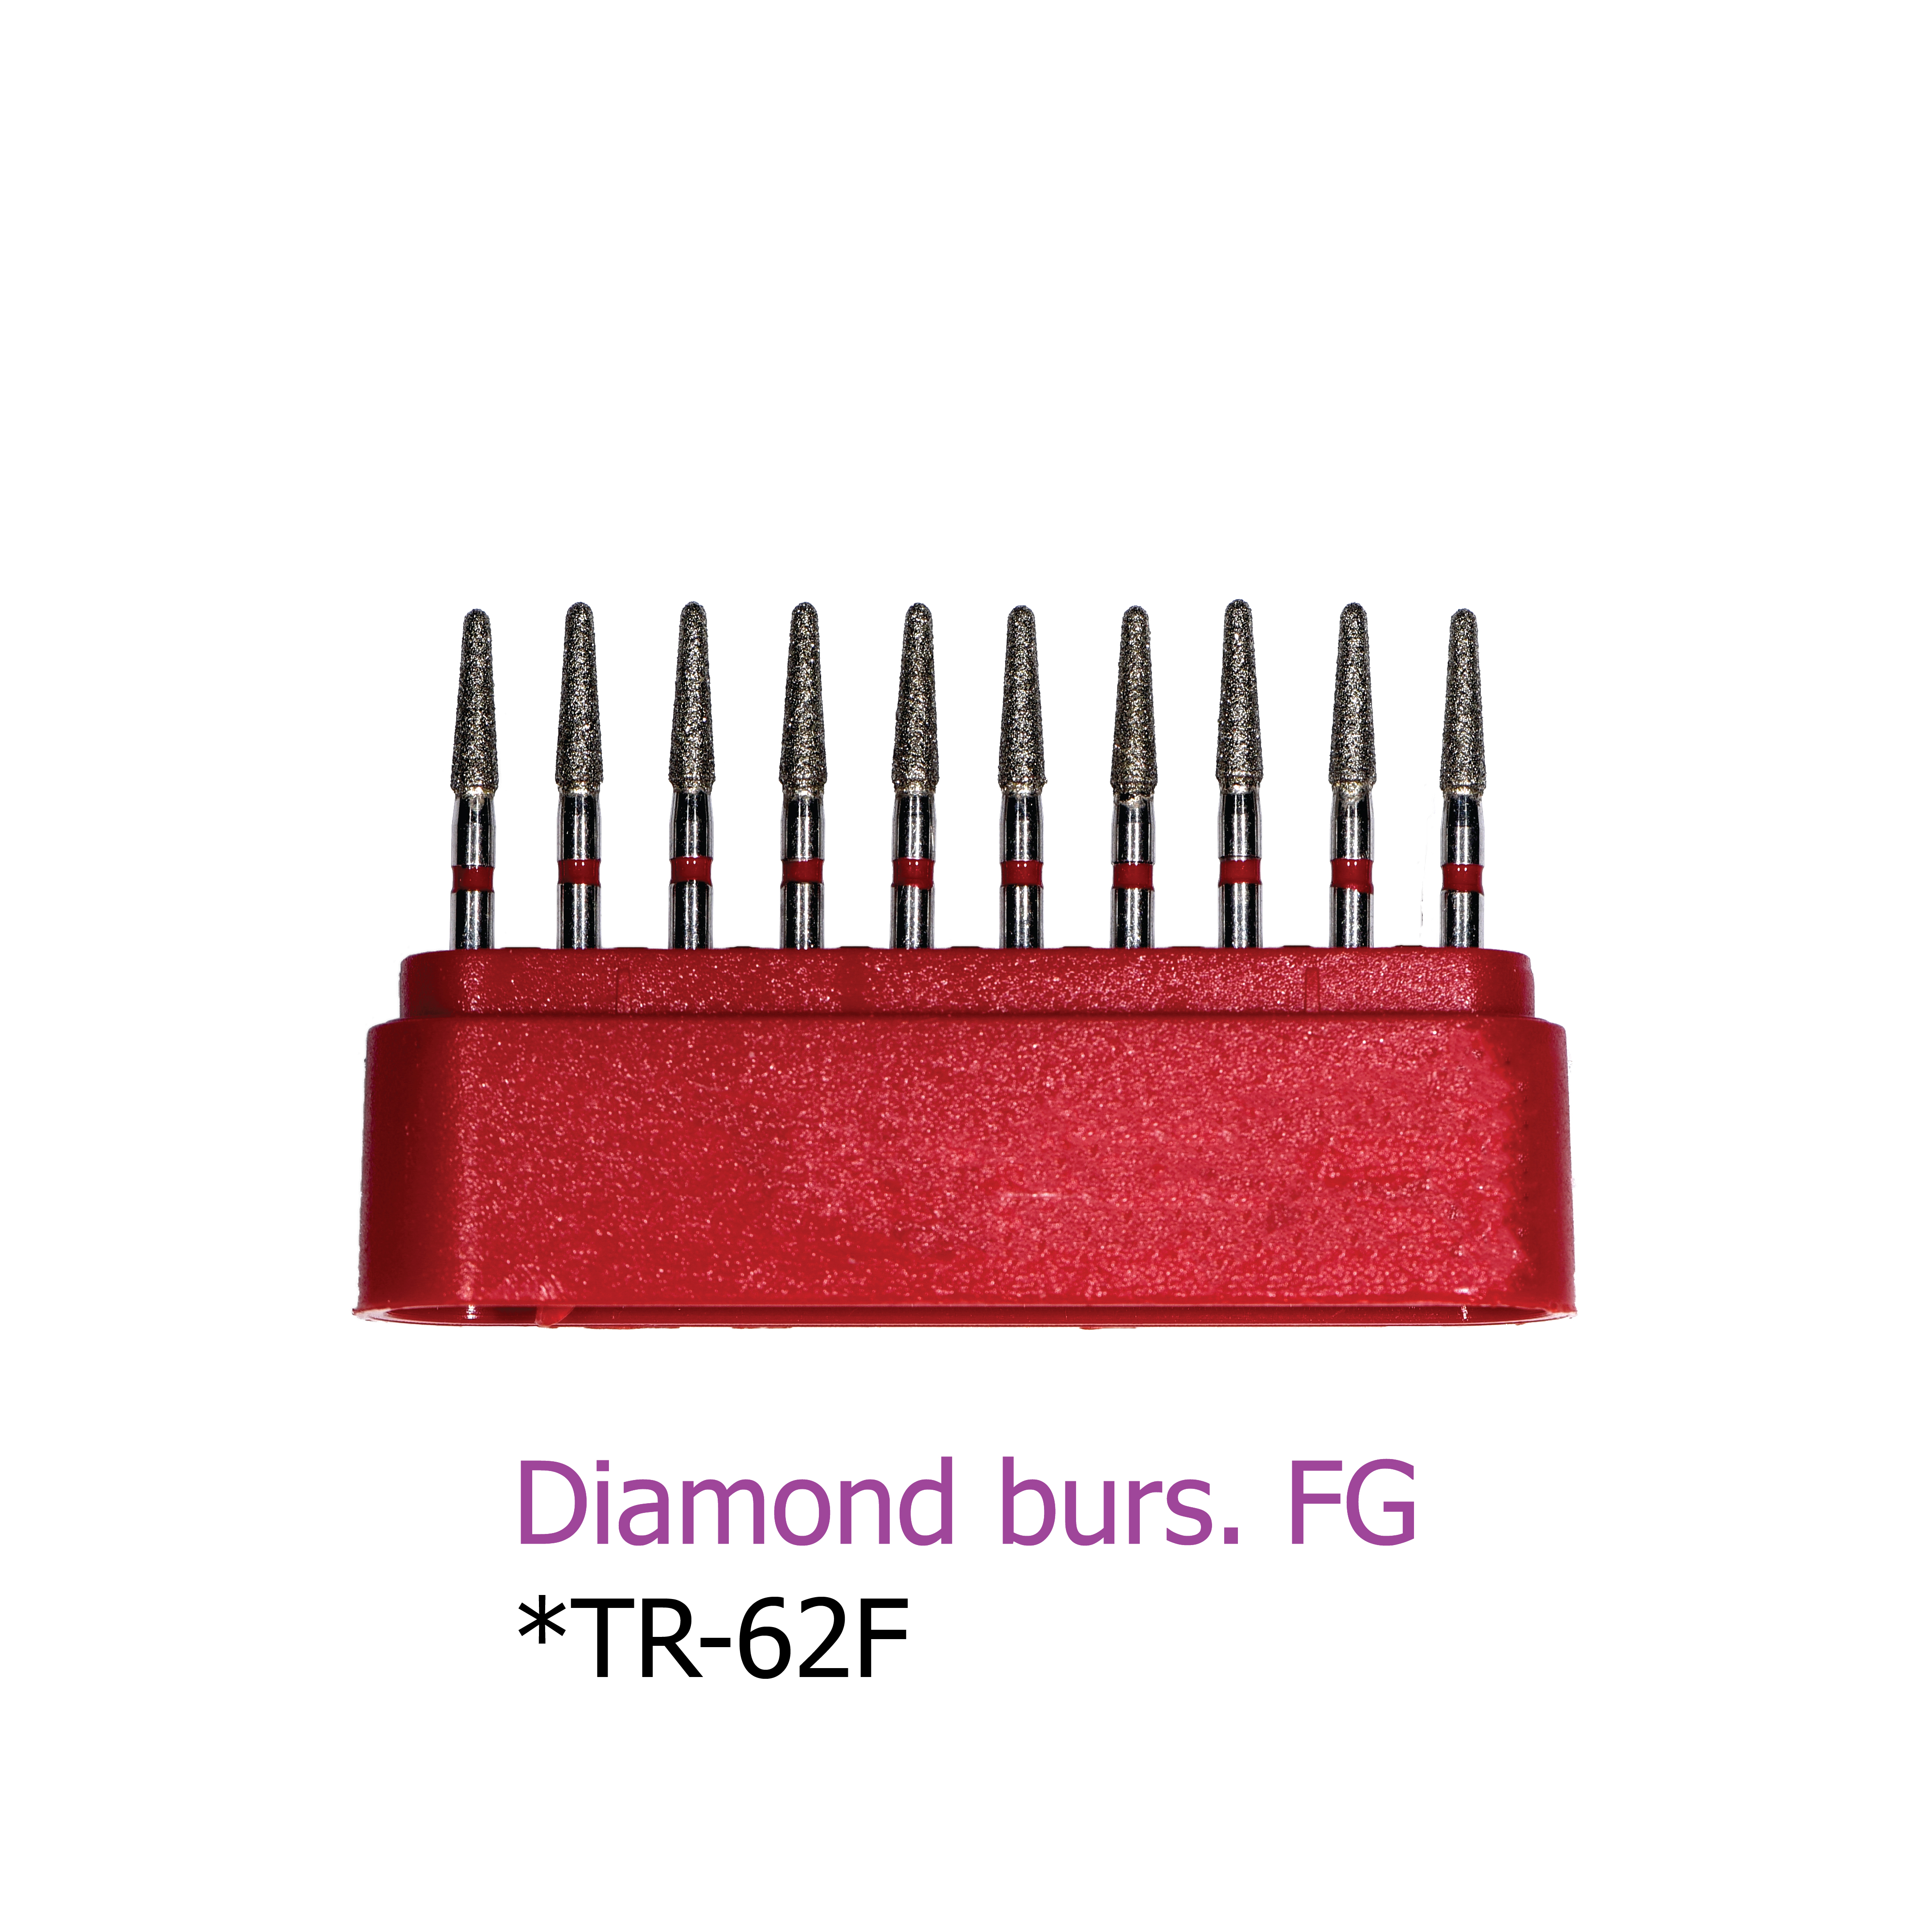 Diamond burs. FG *TR-62F